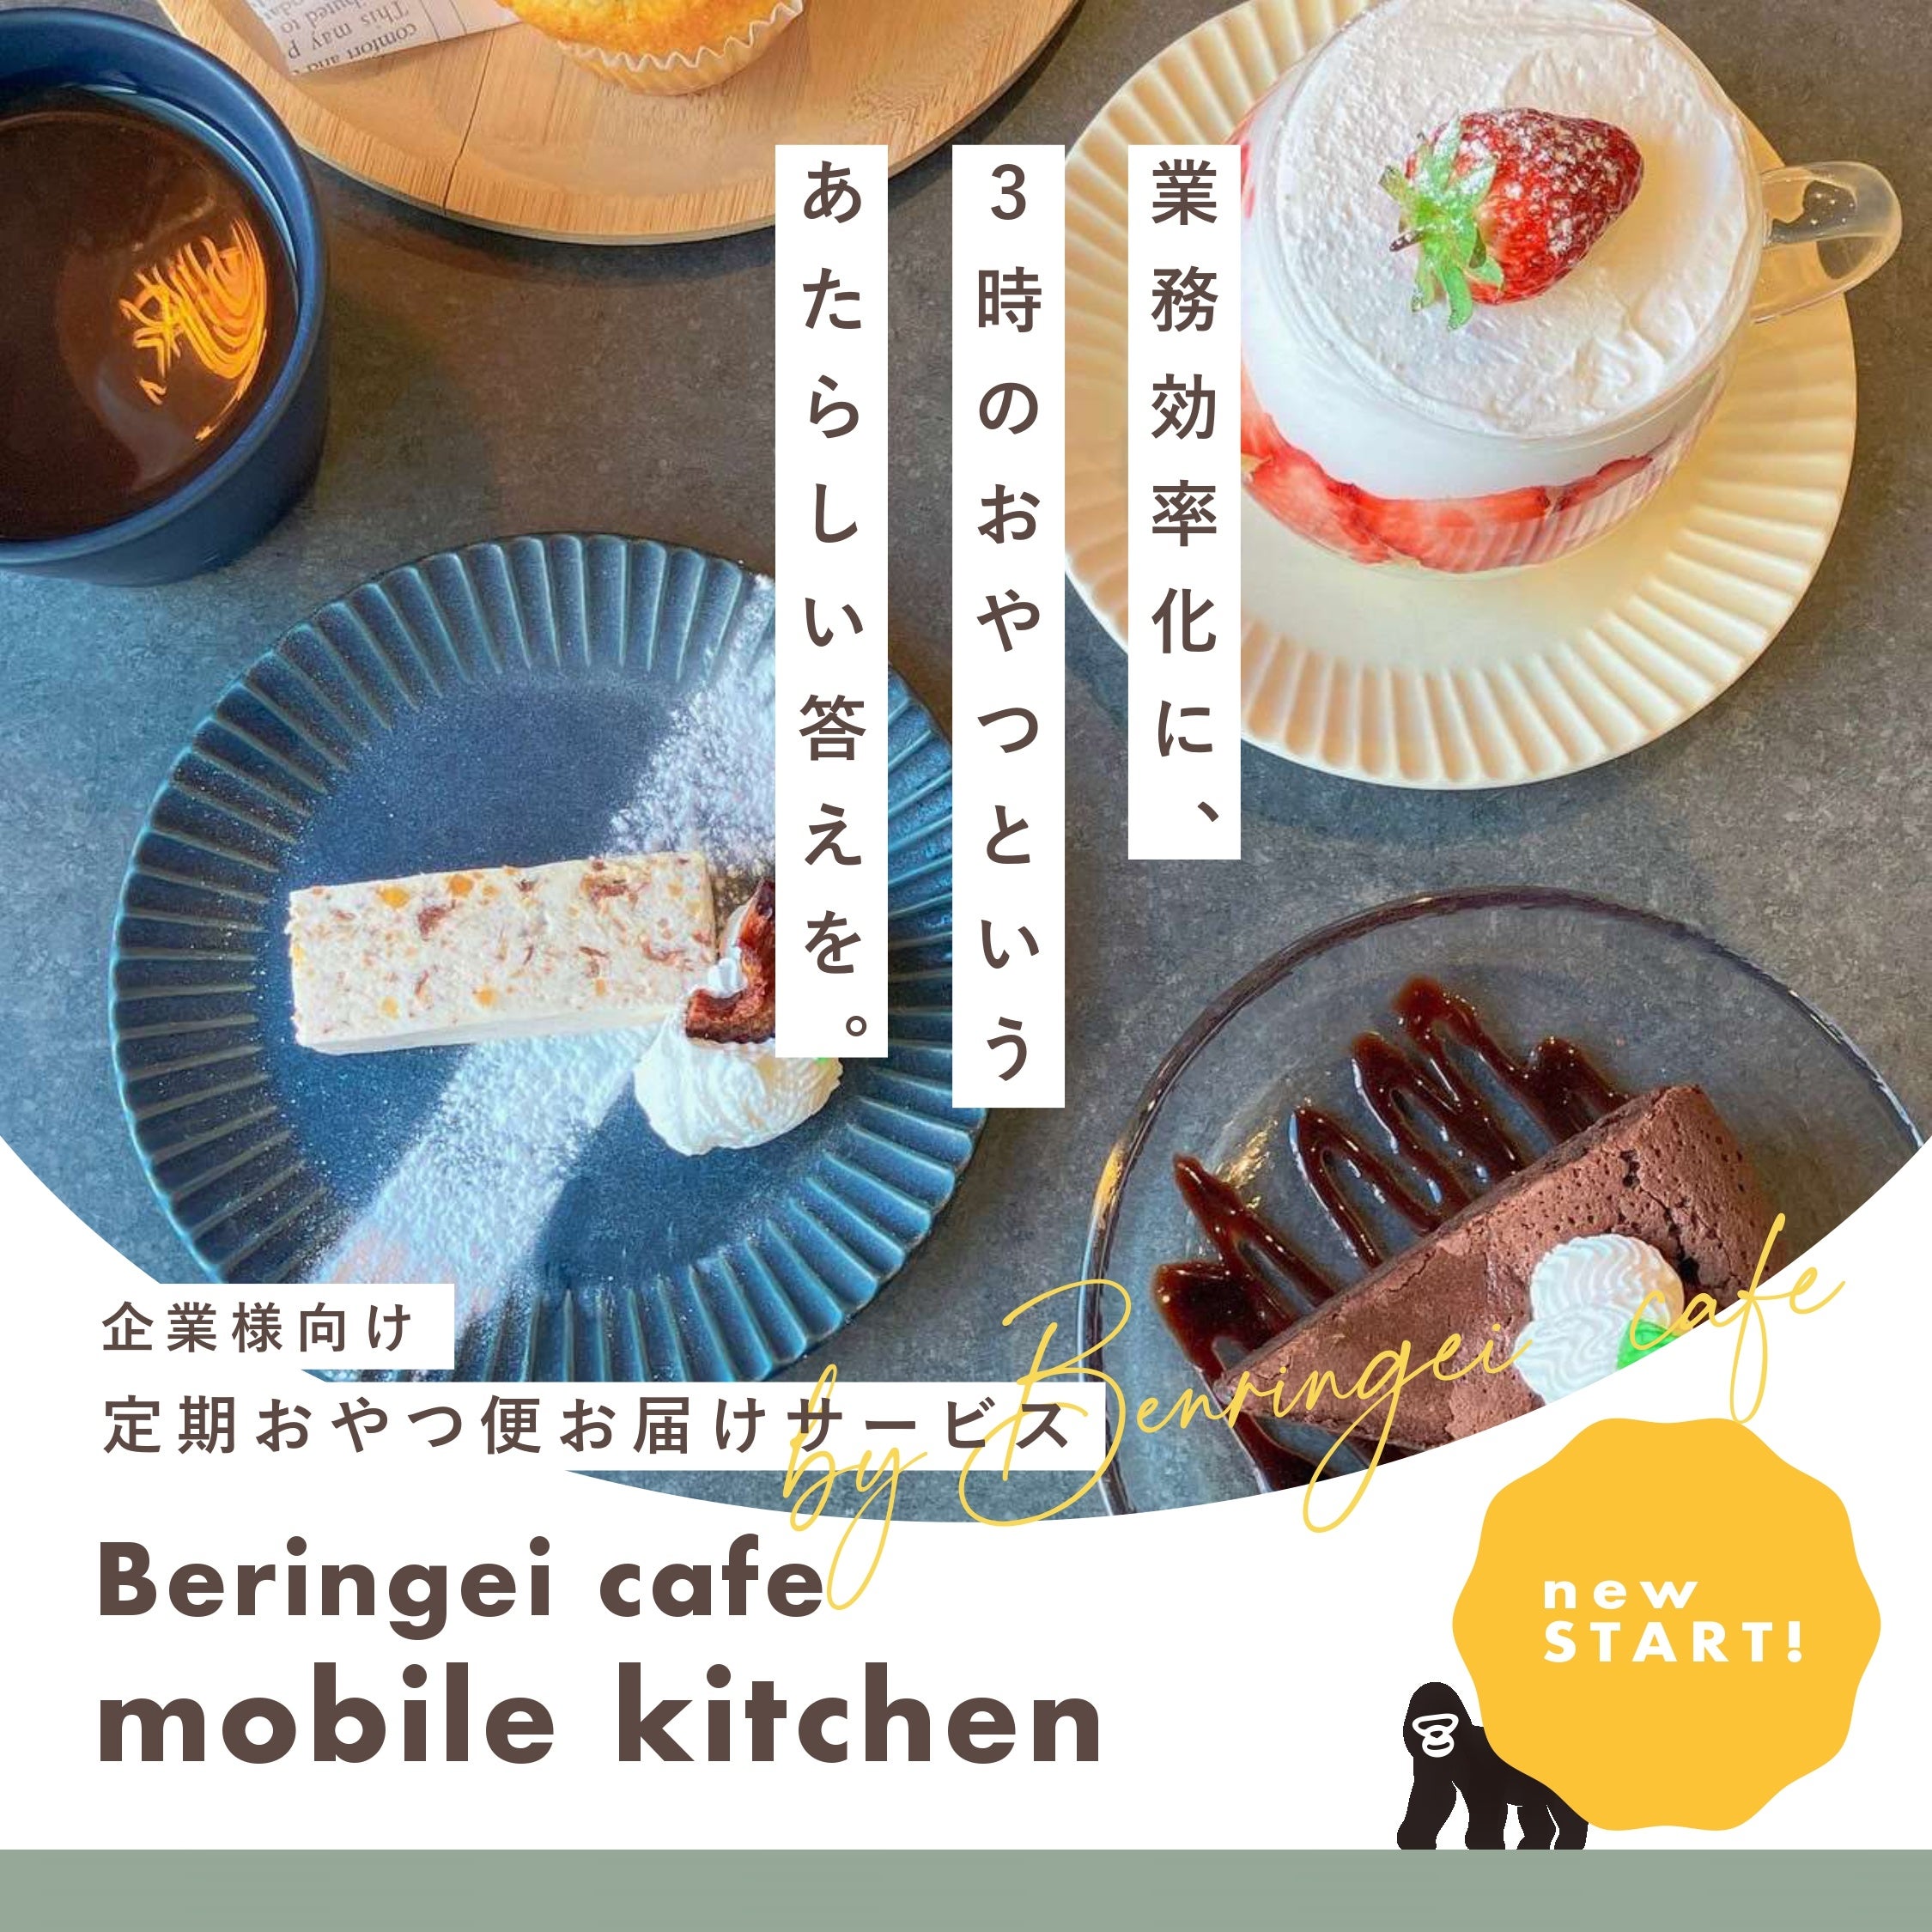 ݂Ȃ܂IƗlւ͂VT[rXuBeringei cafe@mobile kitchenv񋟊Jn